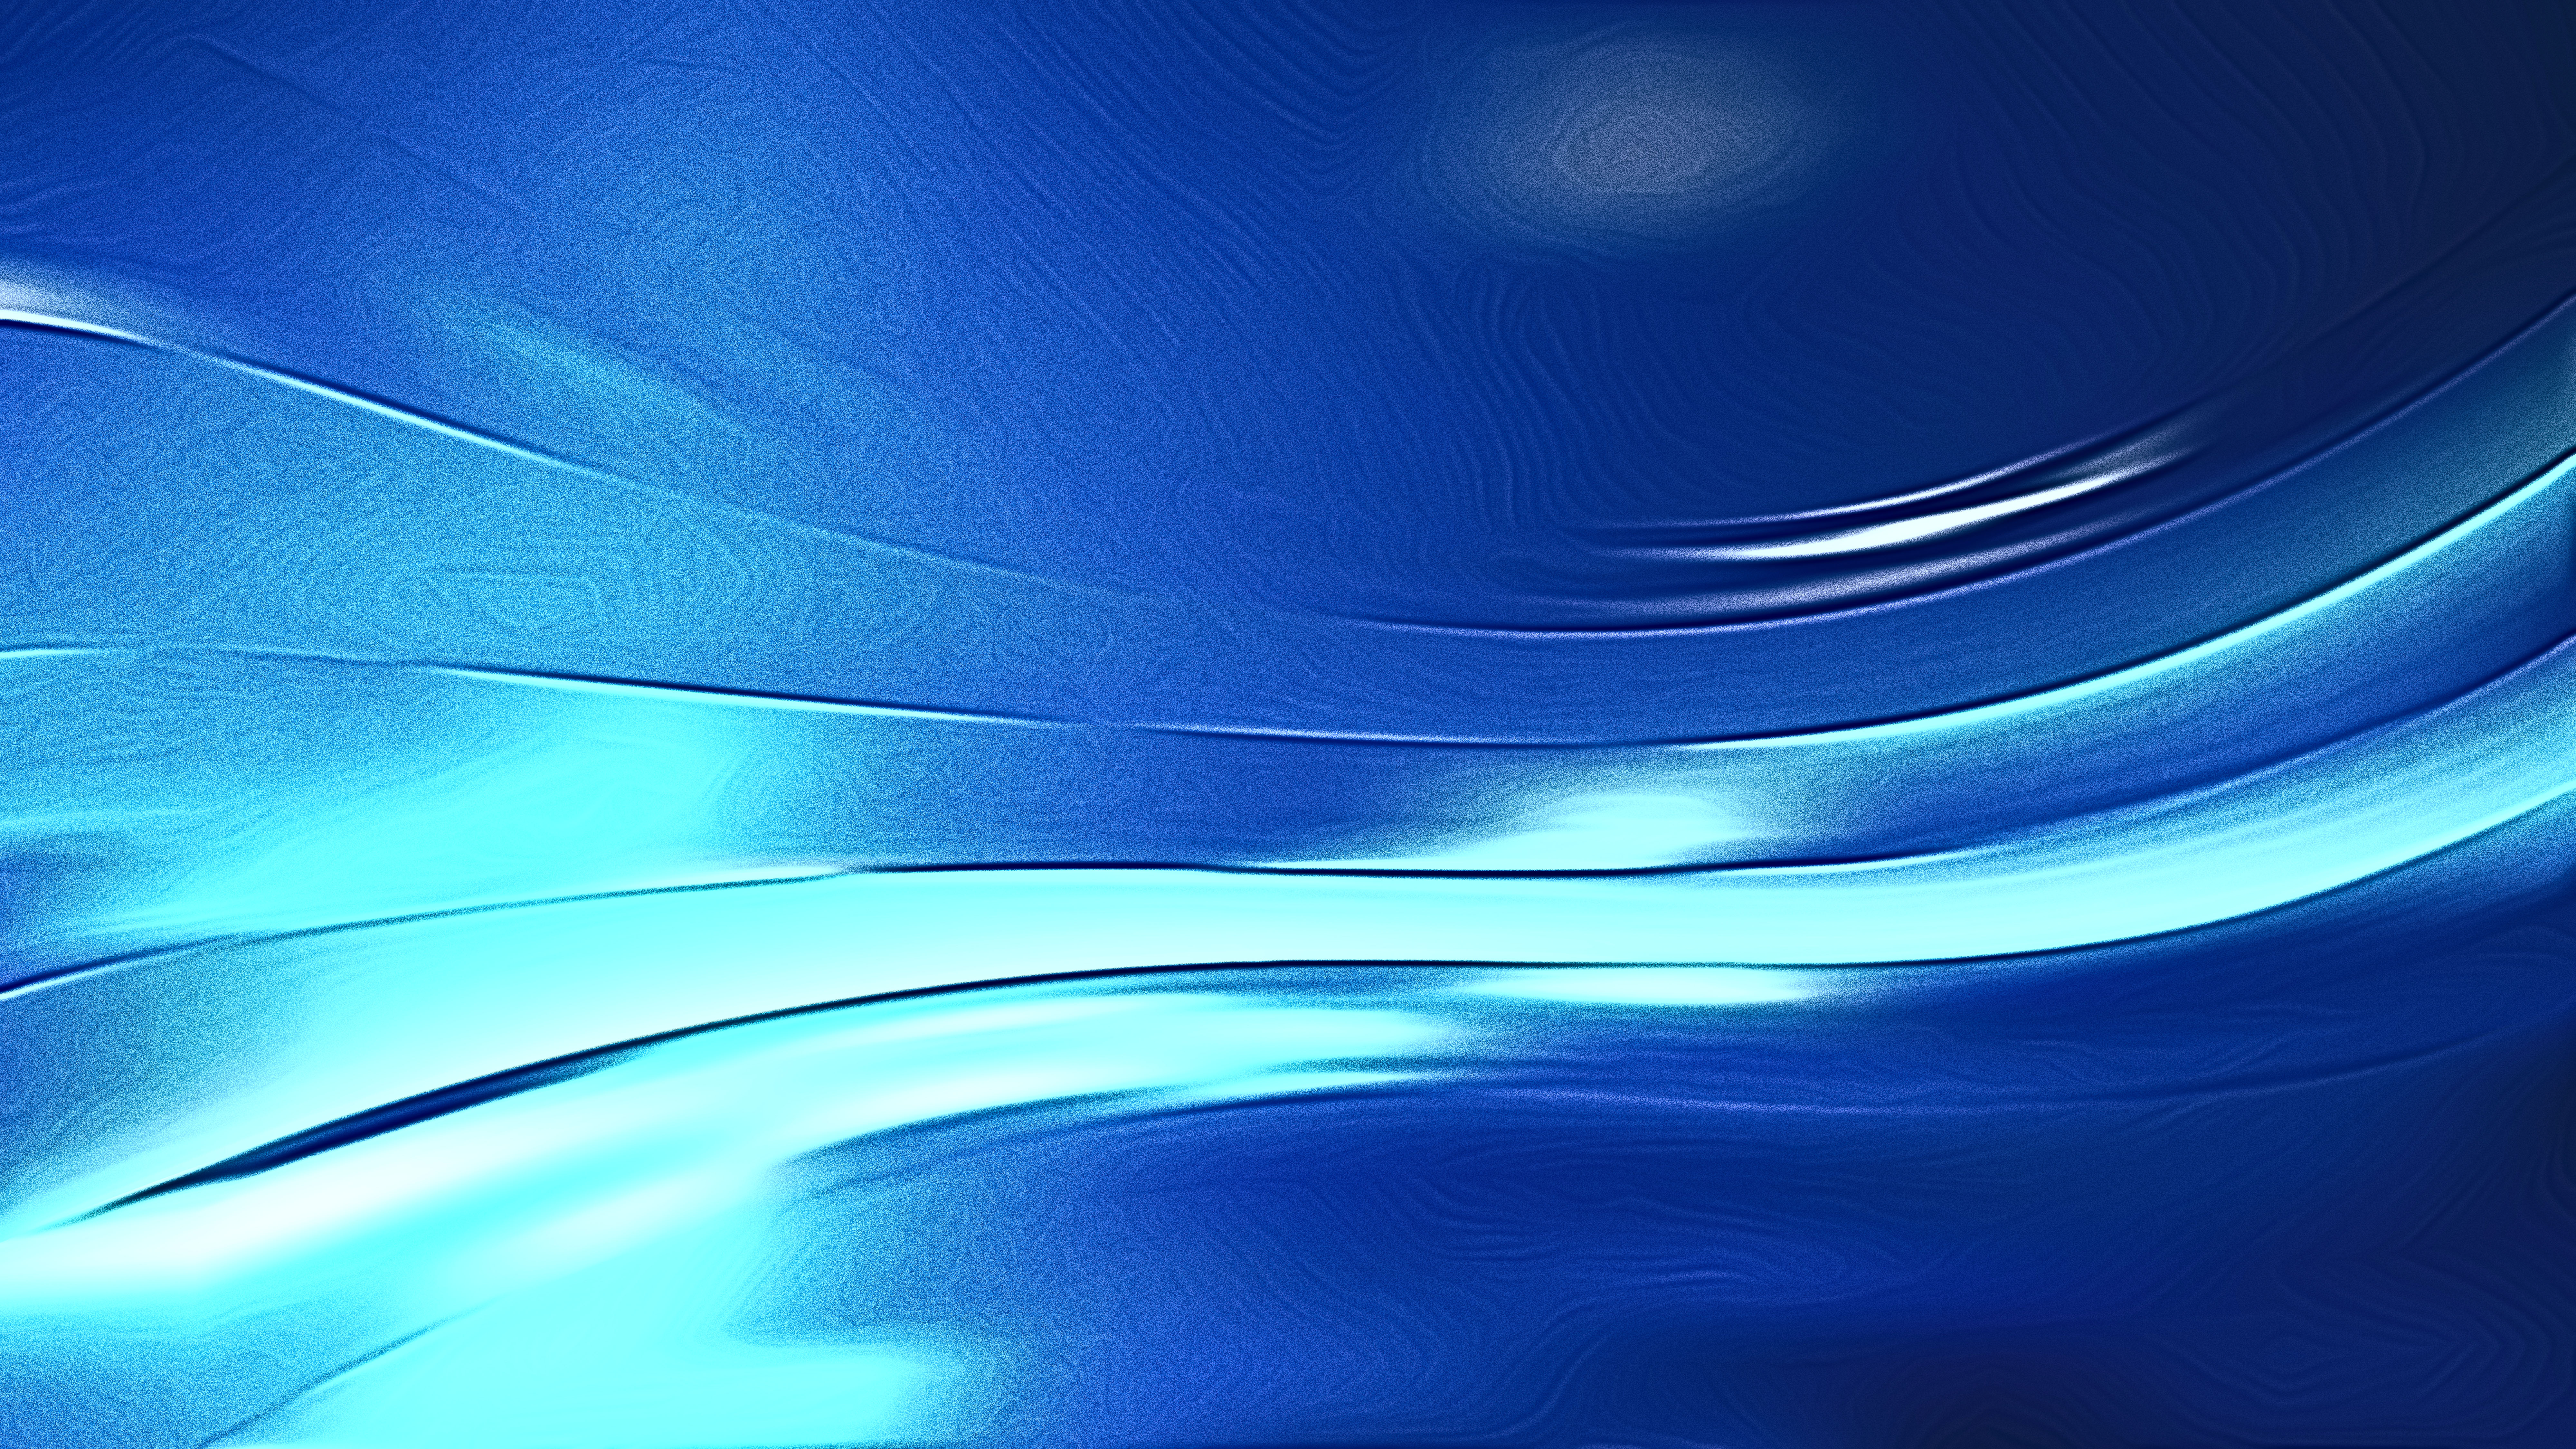 Shiny Blue Background Images - Free Download on Freepik